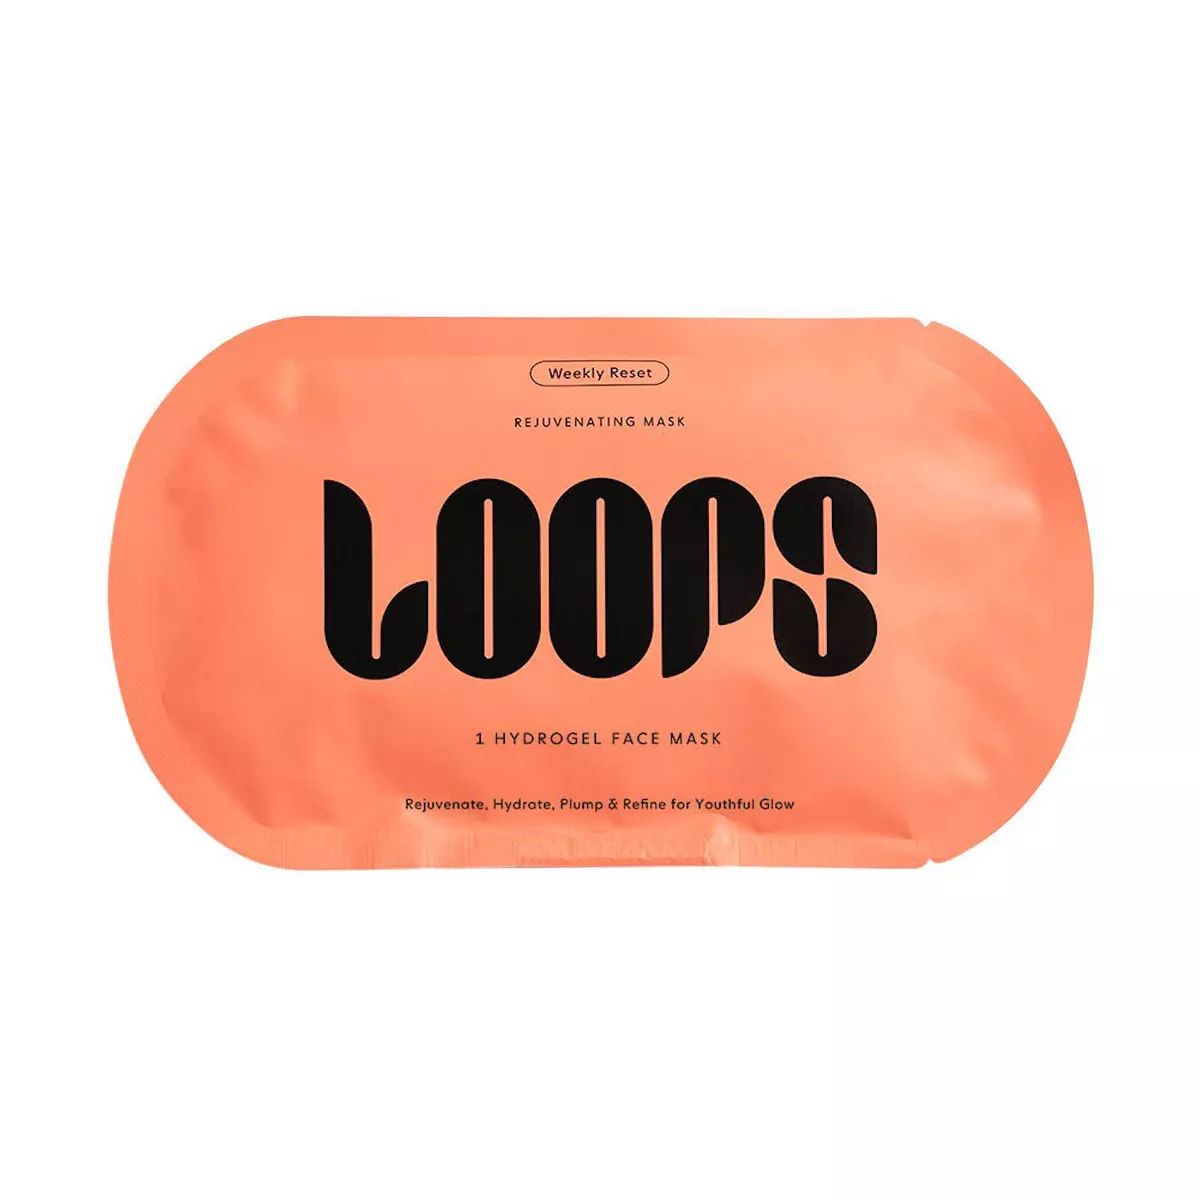 LOOPS Weekly Reset Rejuvenating Mask - 1.058oz | Target